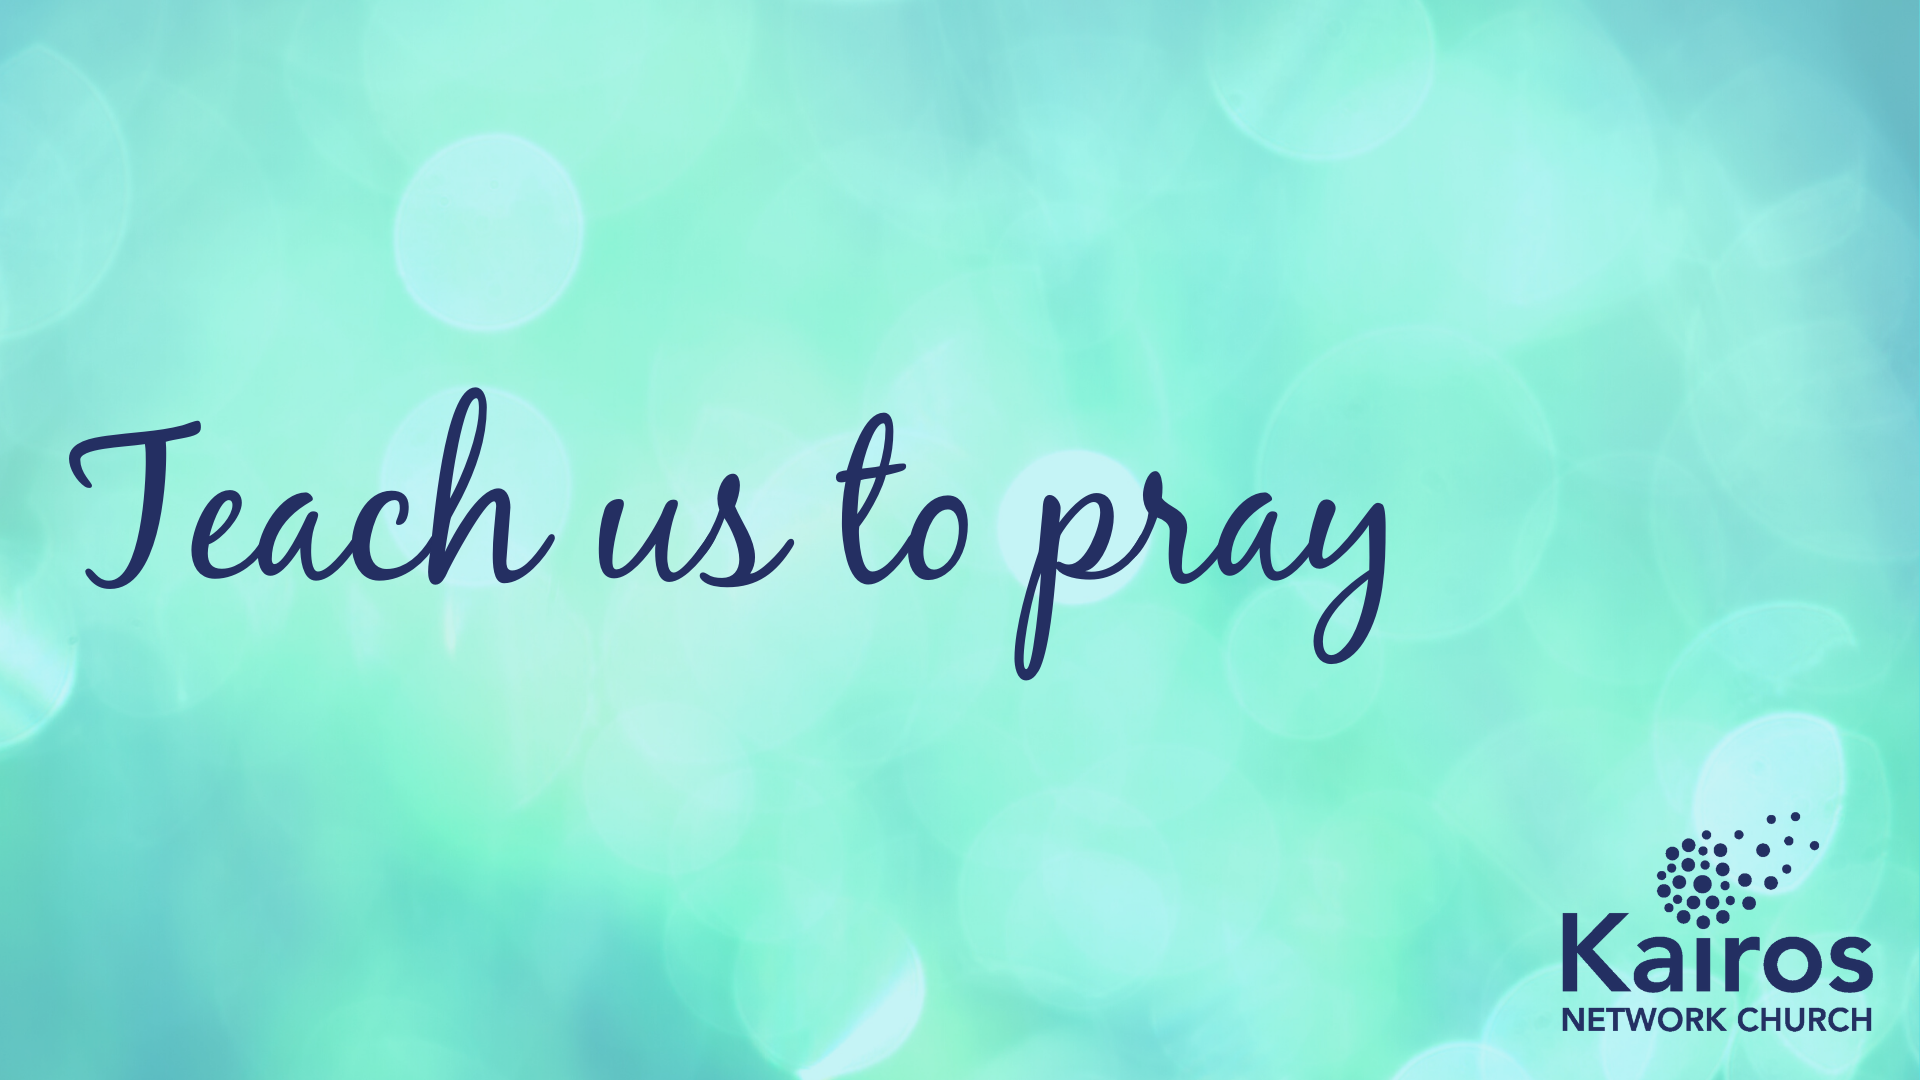 Teach us to pray